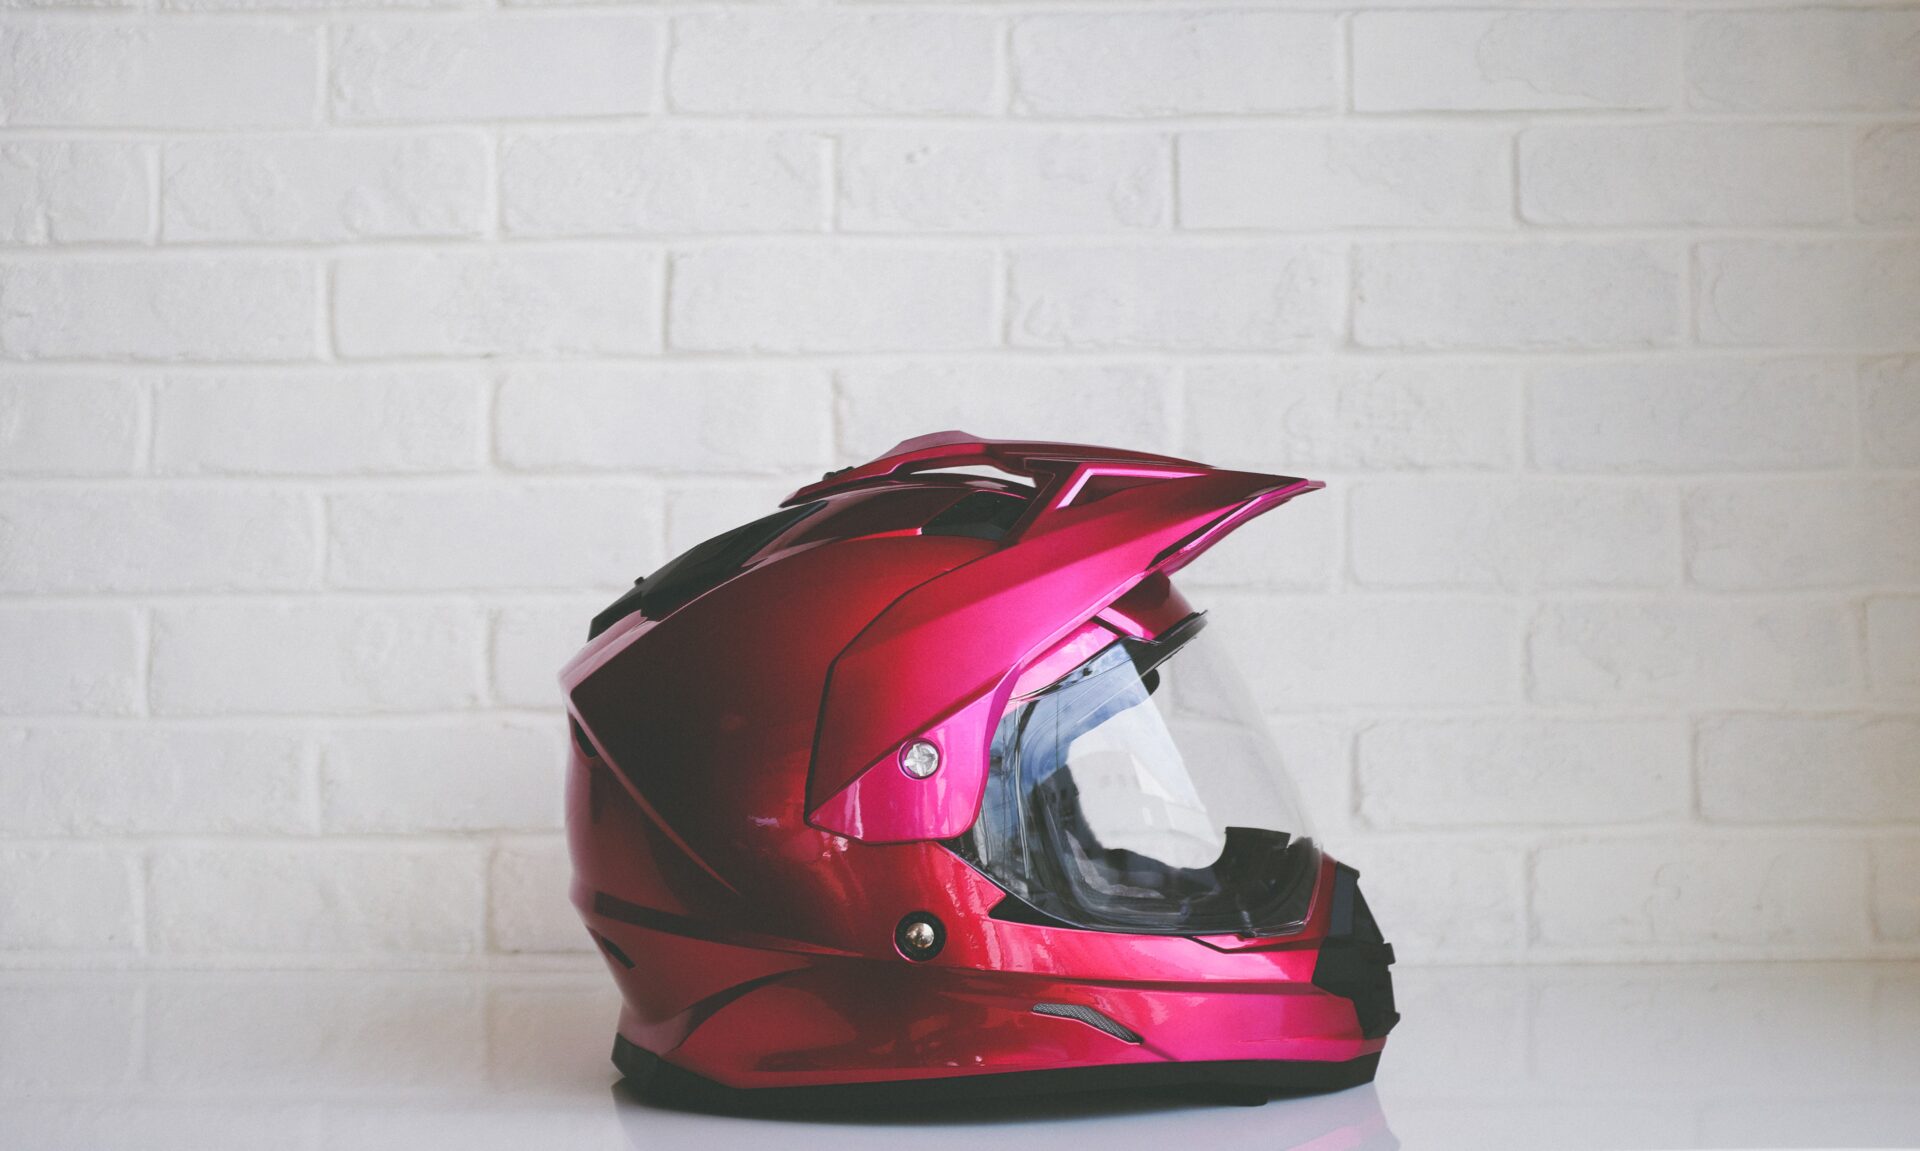 Bilde av en rosa motorsykkelhjelm. Viktig å ha godt utstyr når man skal ta motorsykkellappen.